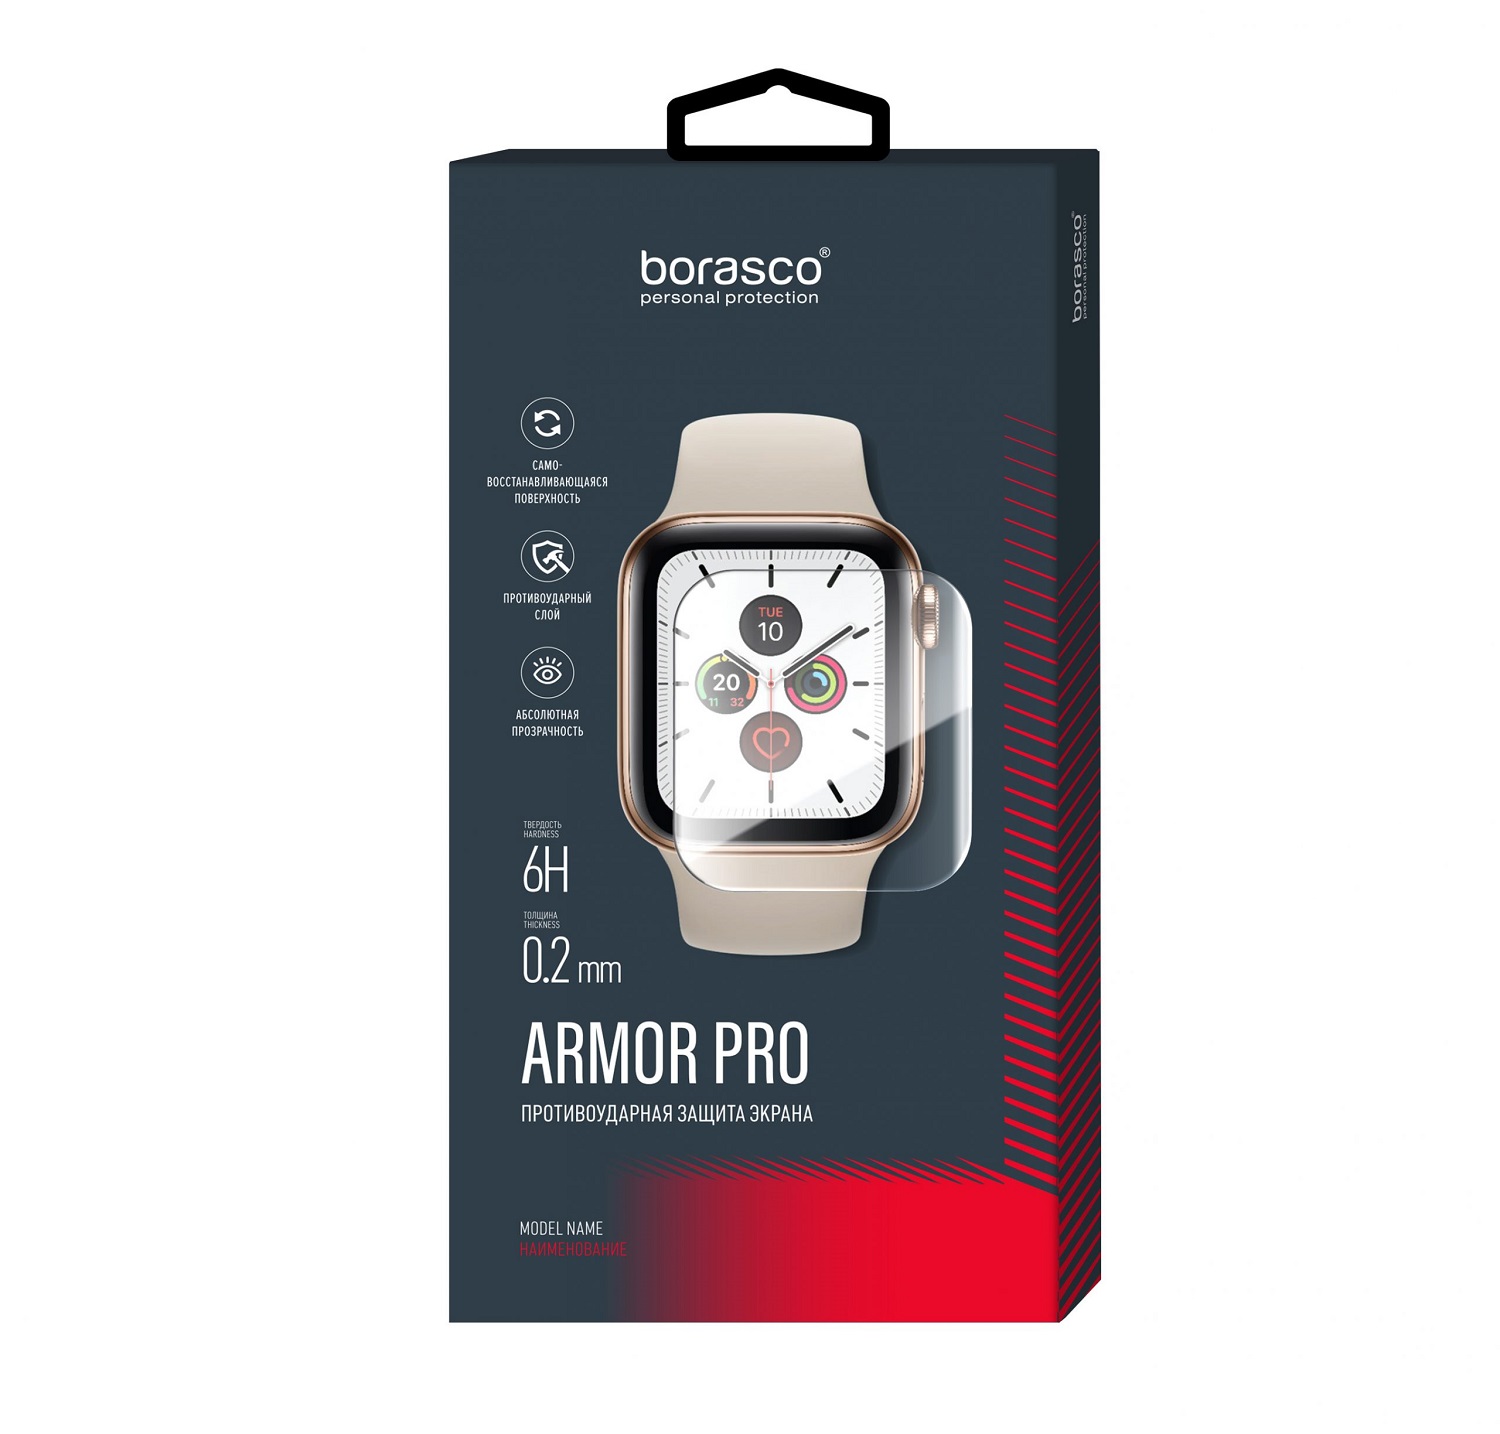 Защита экрана BoraSCO Armor Pro для Huawei Watch fit защита экрана borasco armor pro для honor watch se матовый